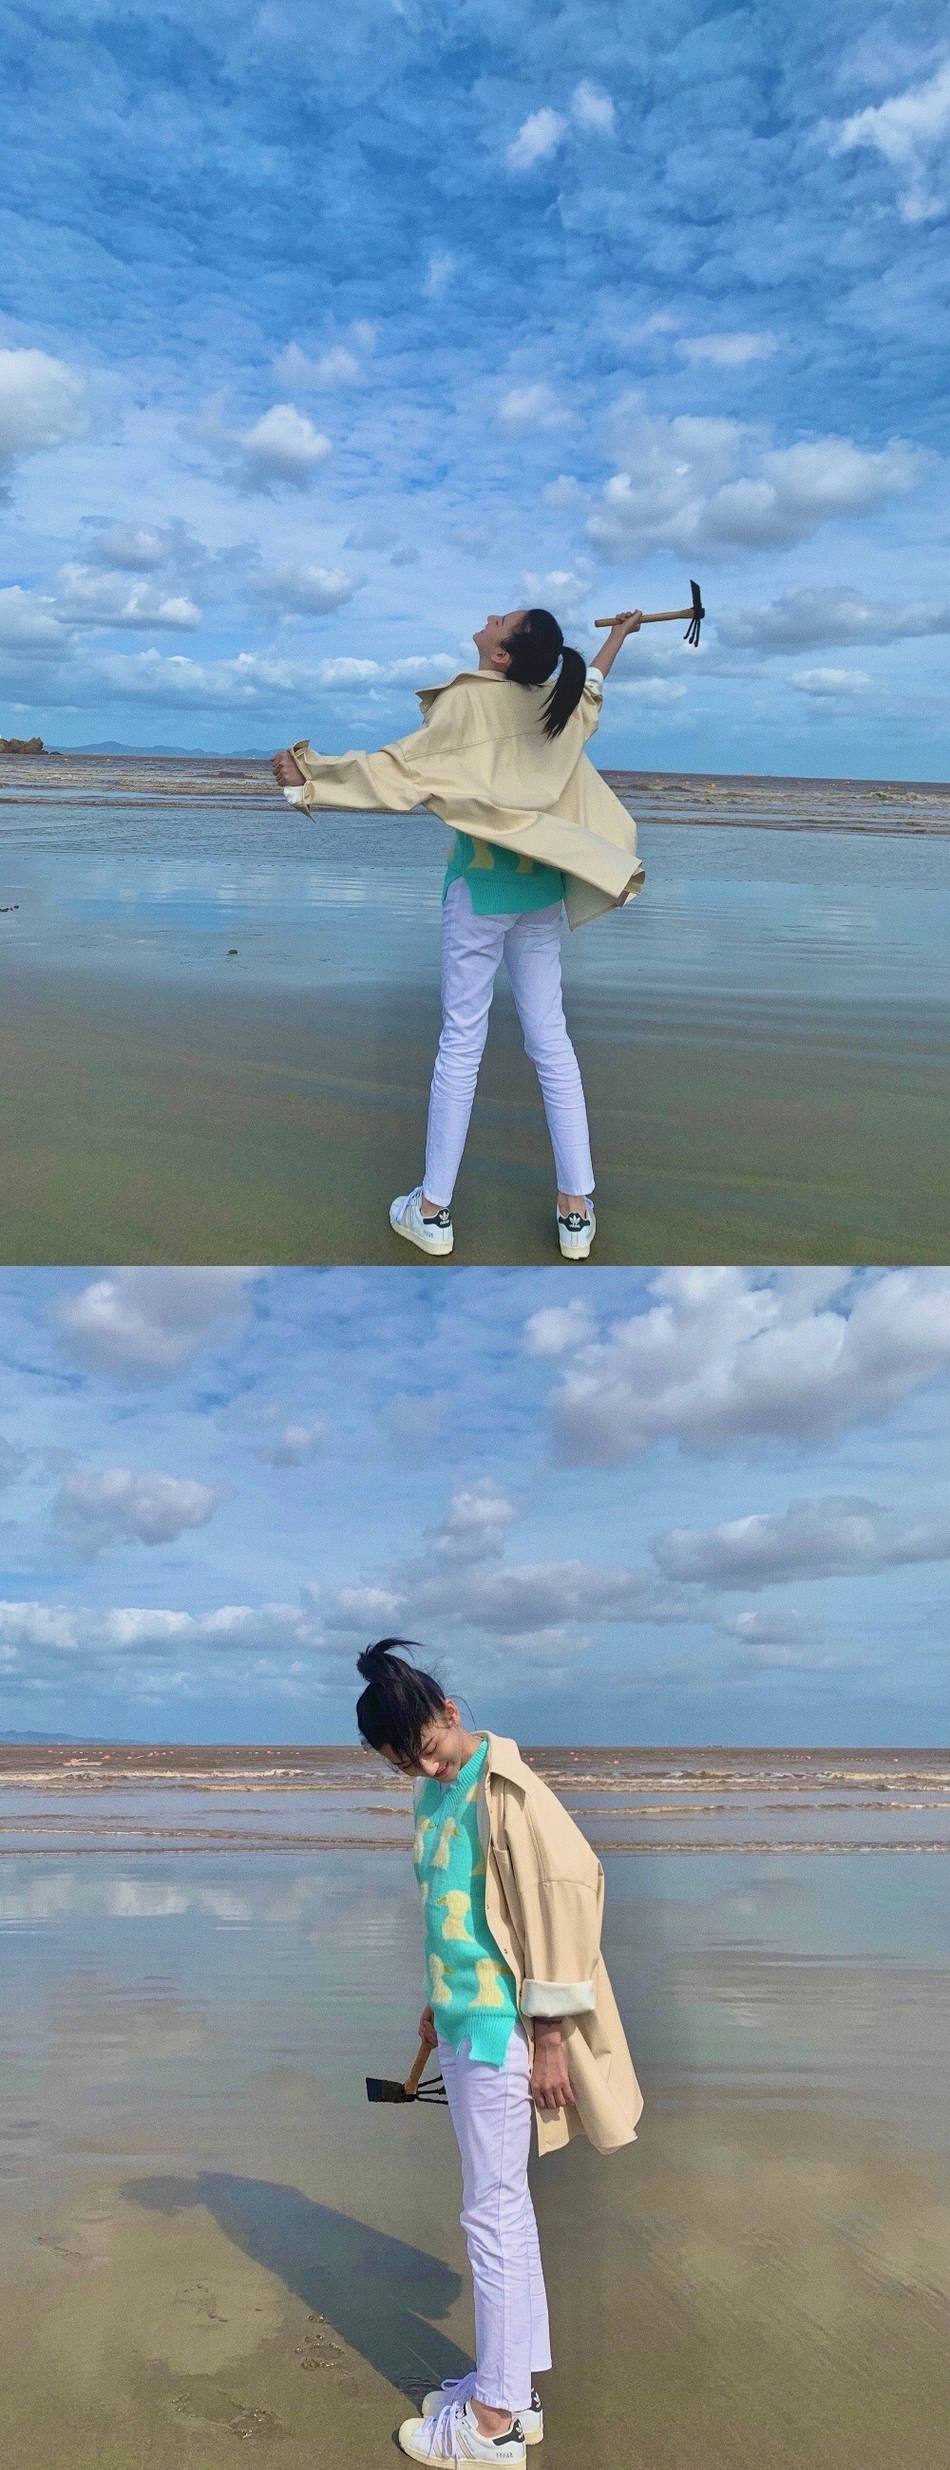 照片中宋祖儿在海边穿着湖蓝色小鸭毛衣,搭配牛仔裤和卡其色风衣,头发